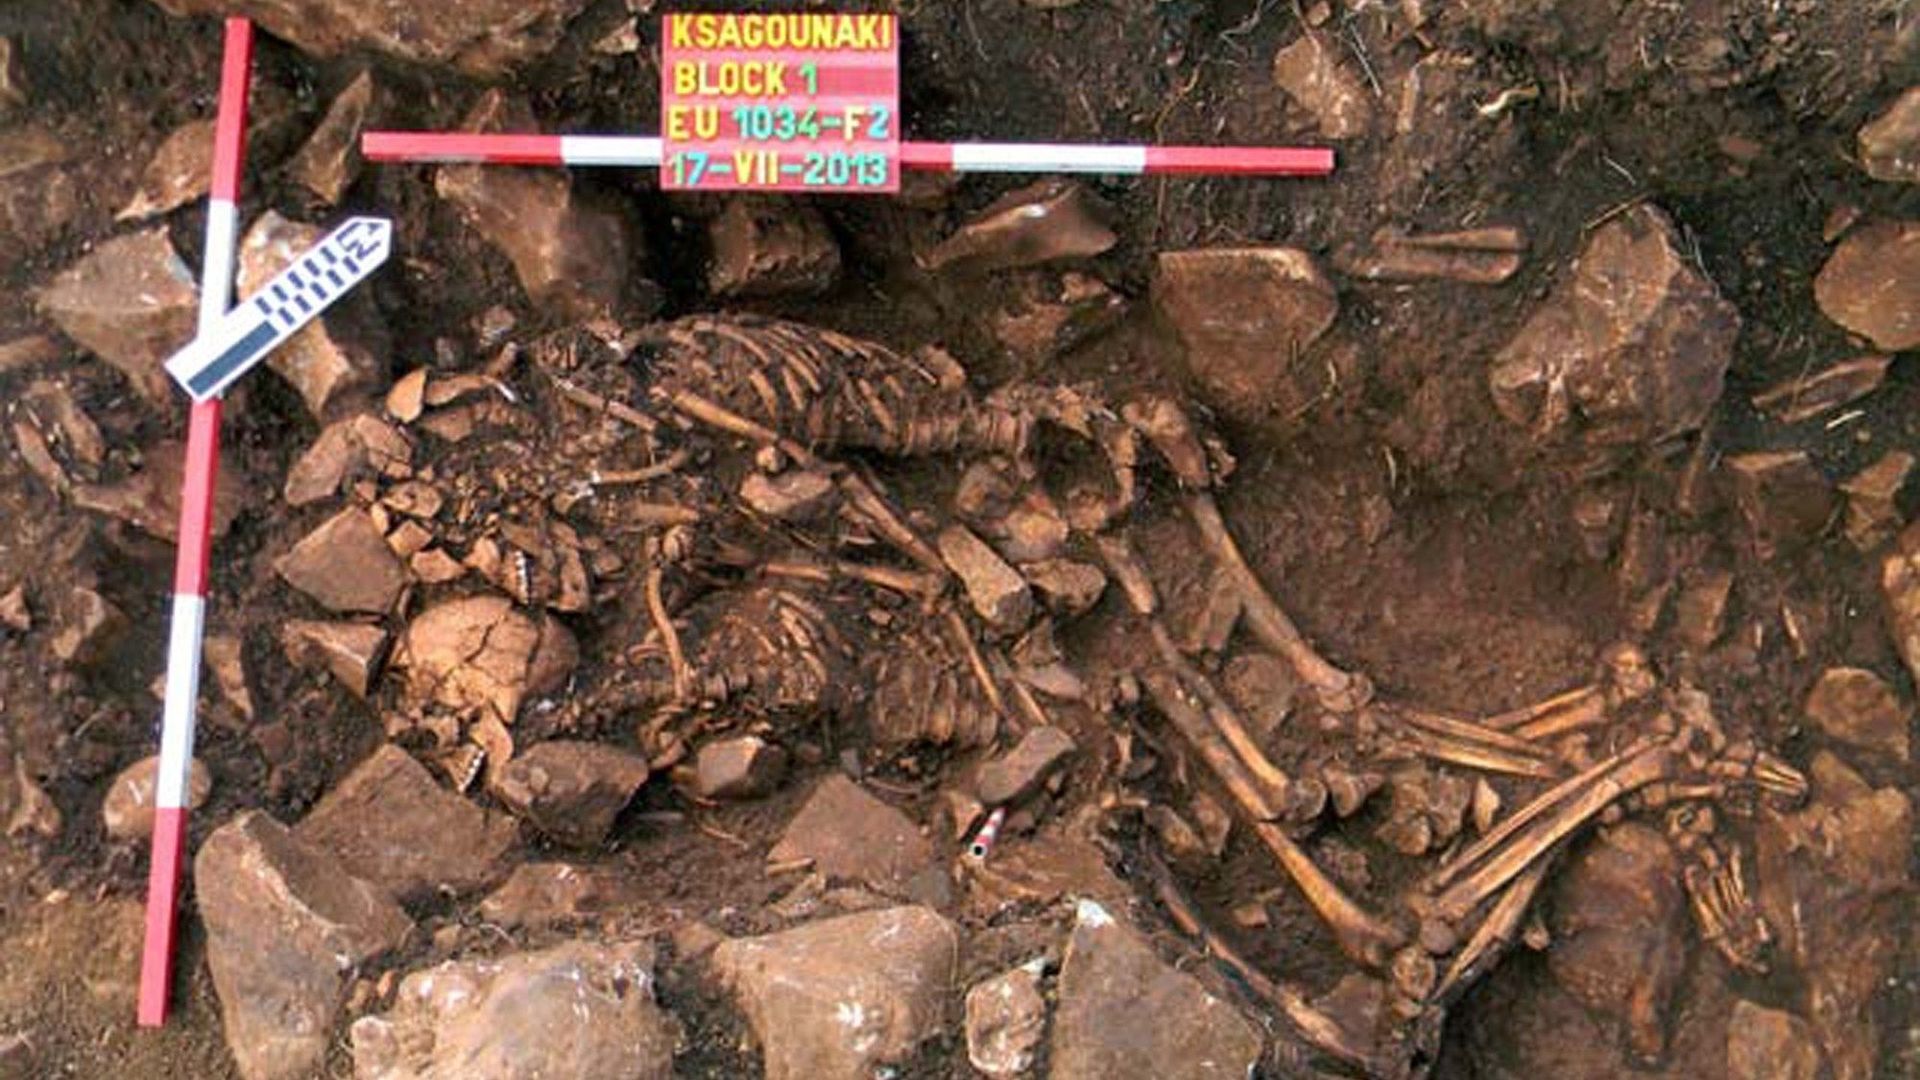 Découverte rare d'un couple préhistorique enterré enlacé en Grèce